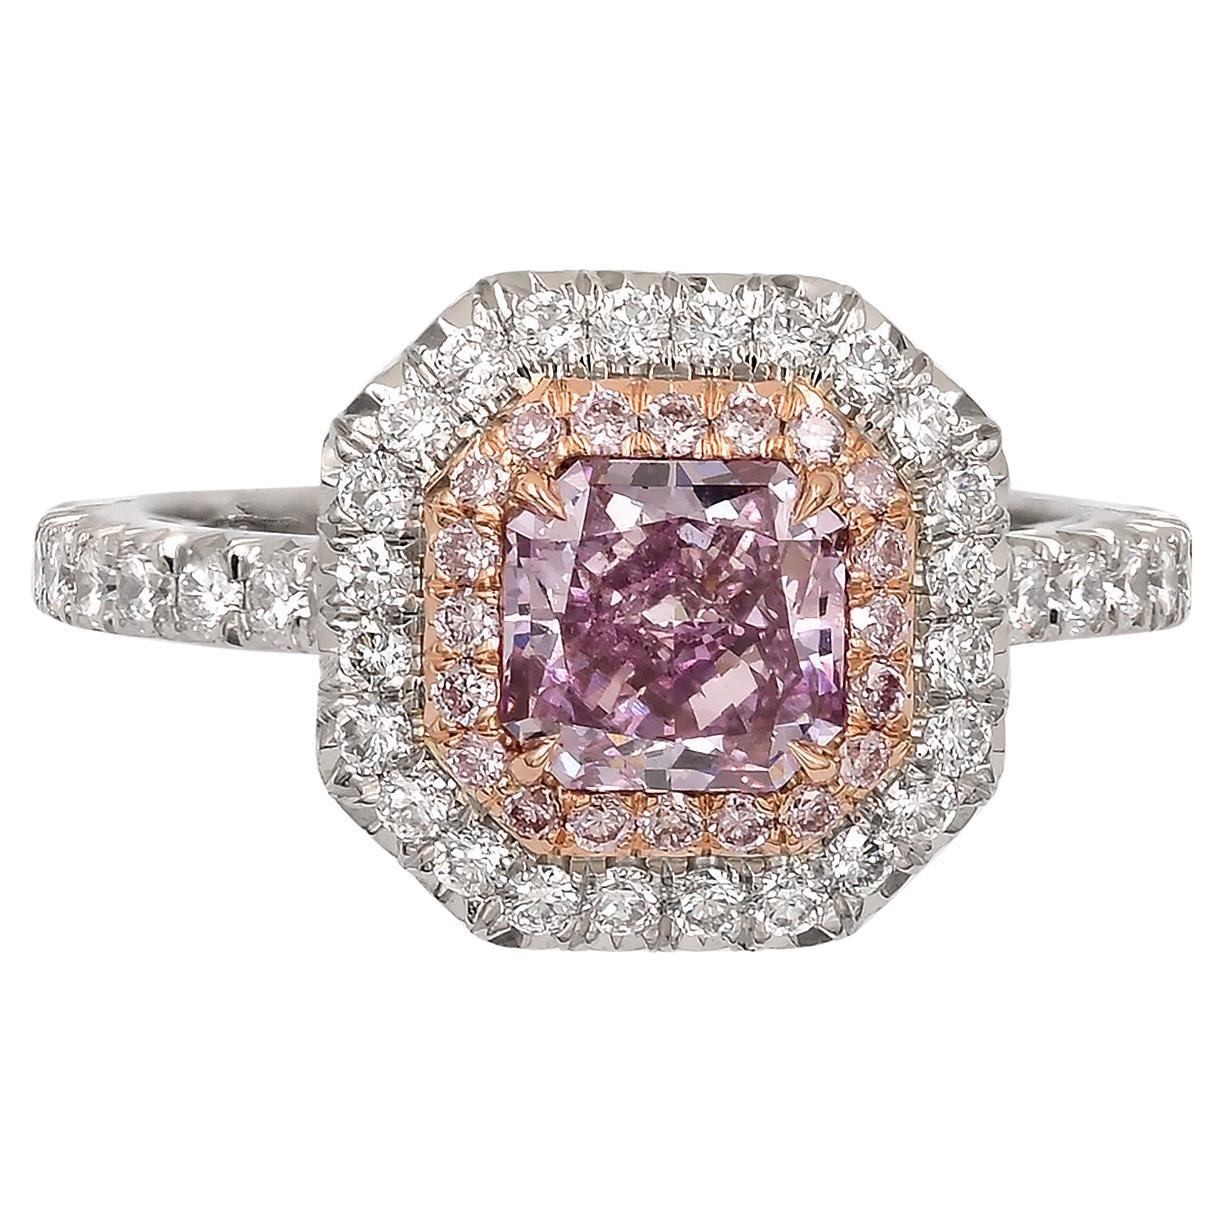 Bague Spectra Fine Jewelry certifiée GIA avec un diamant rose violet de 1,1 carat